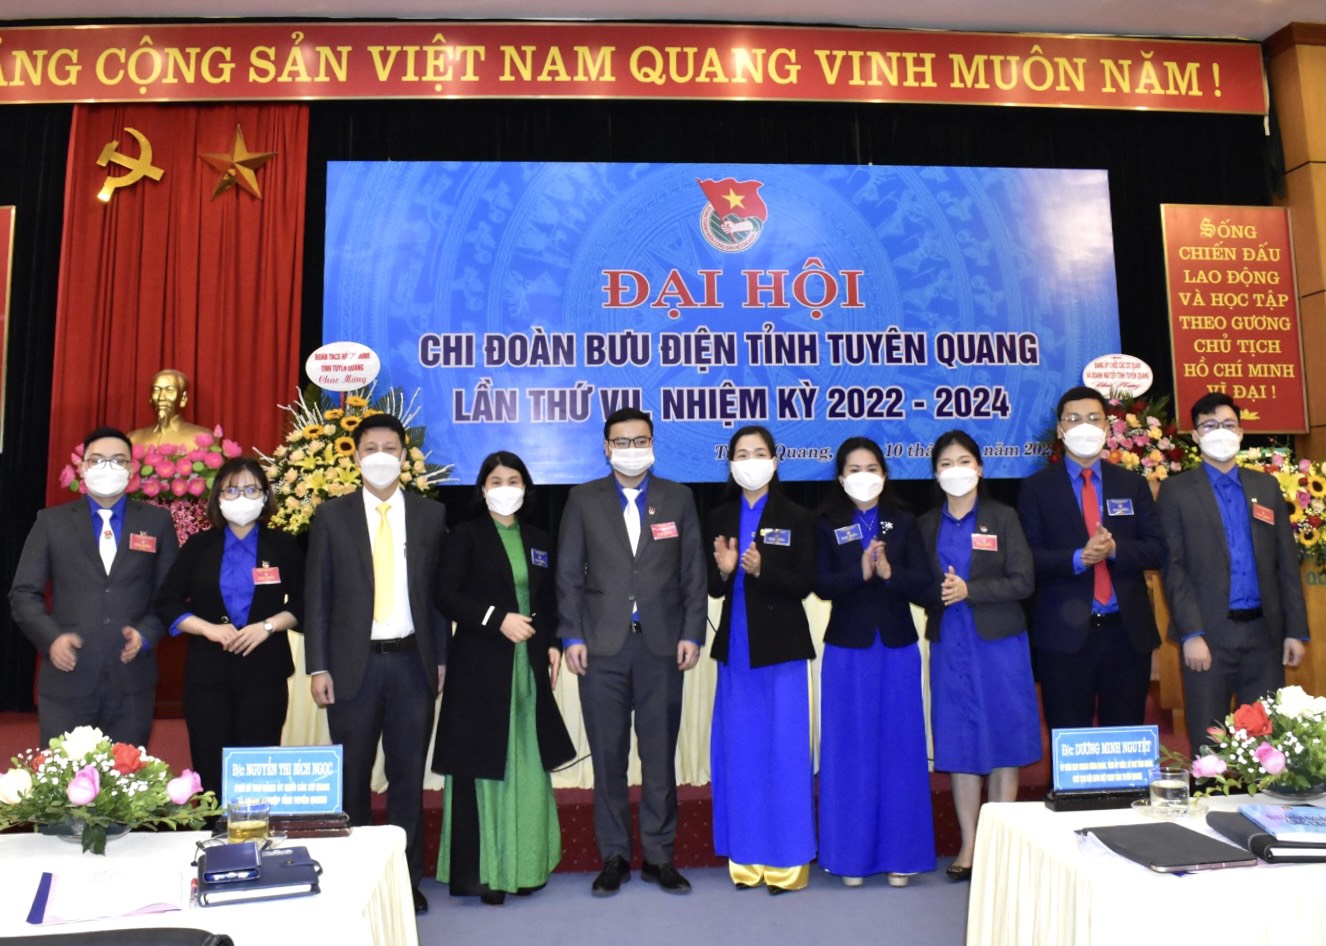 Đại hội Chi đoàn Bưu điện tỉnh Tuyên Quang lần thứ VII, nhiệm kỳ 2022 – 2024 diễn ra thành công tốt đẹp